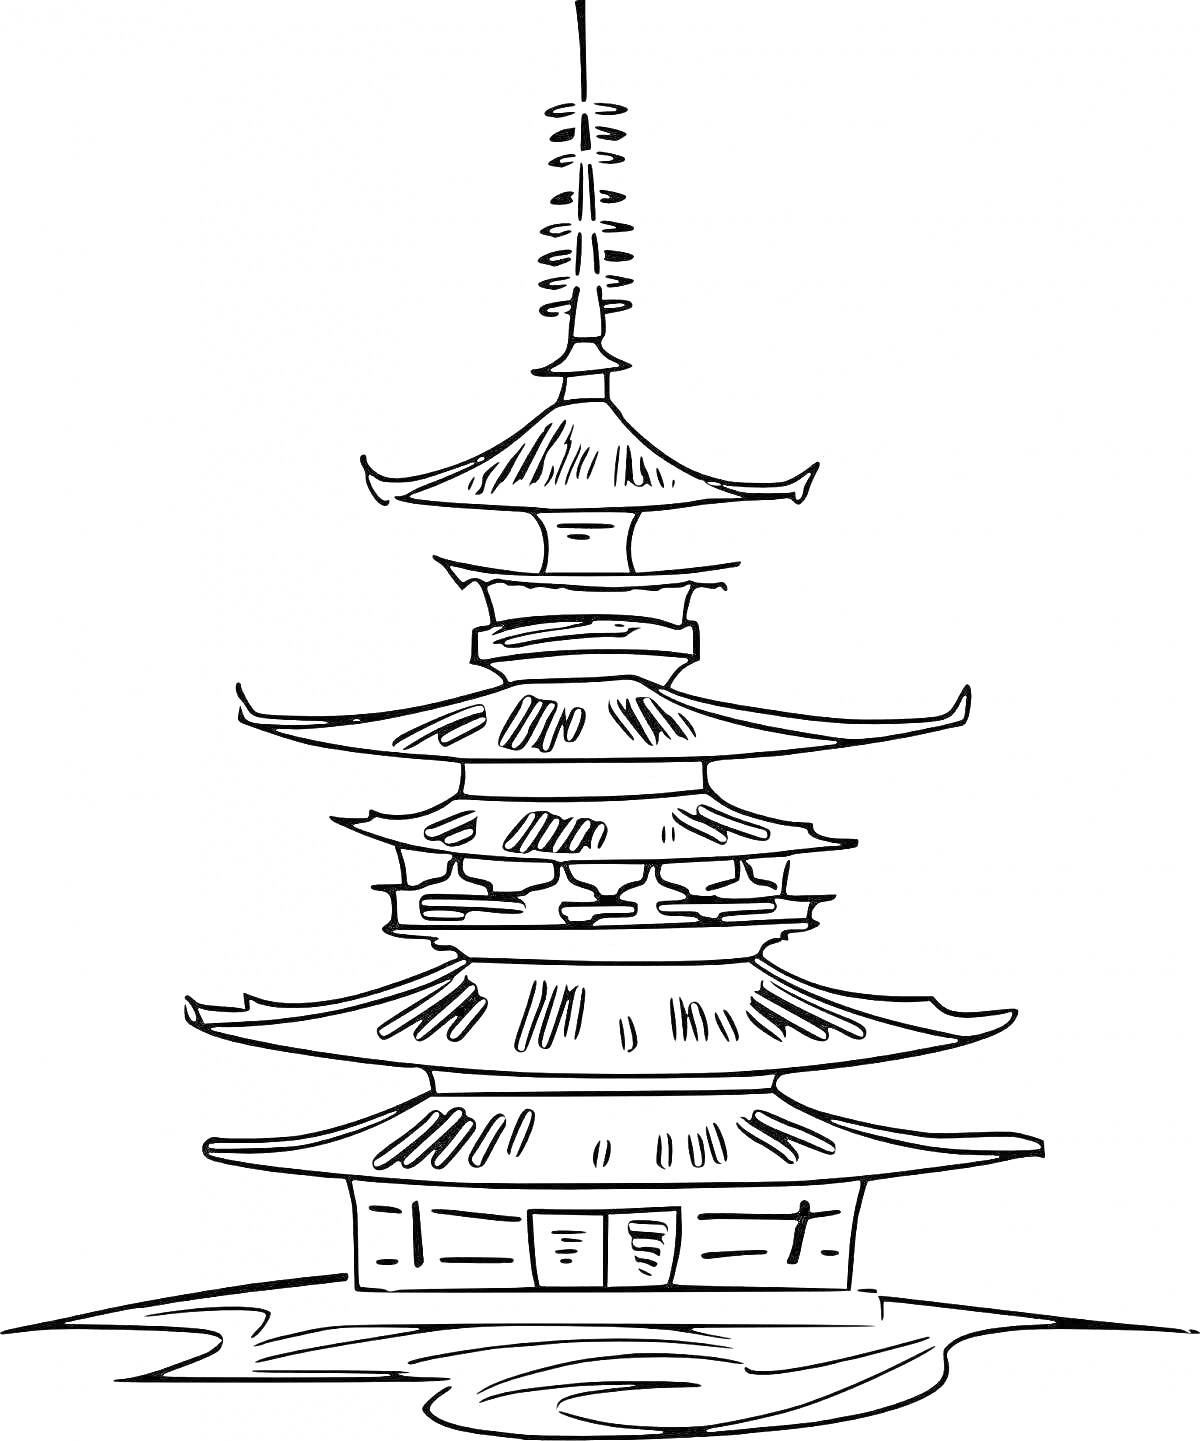 Раскраска Пятиуровневая пагода на волнистом основании, видна структура крыши и декоративные элементы